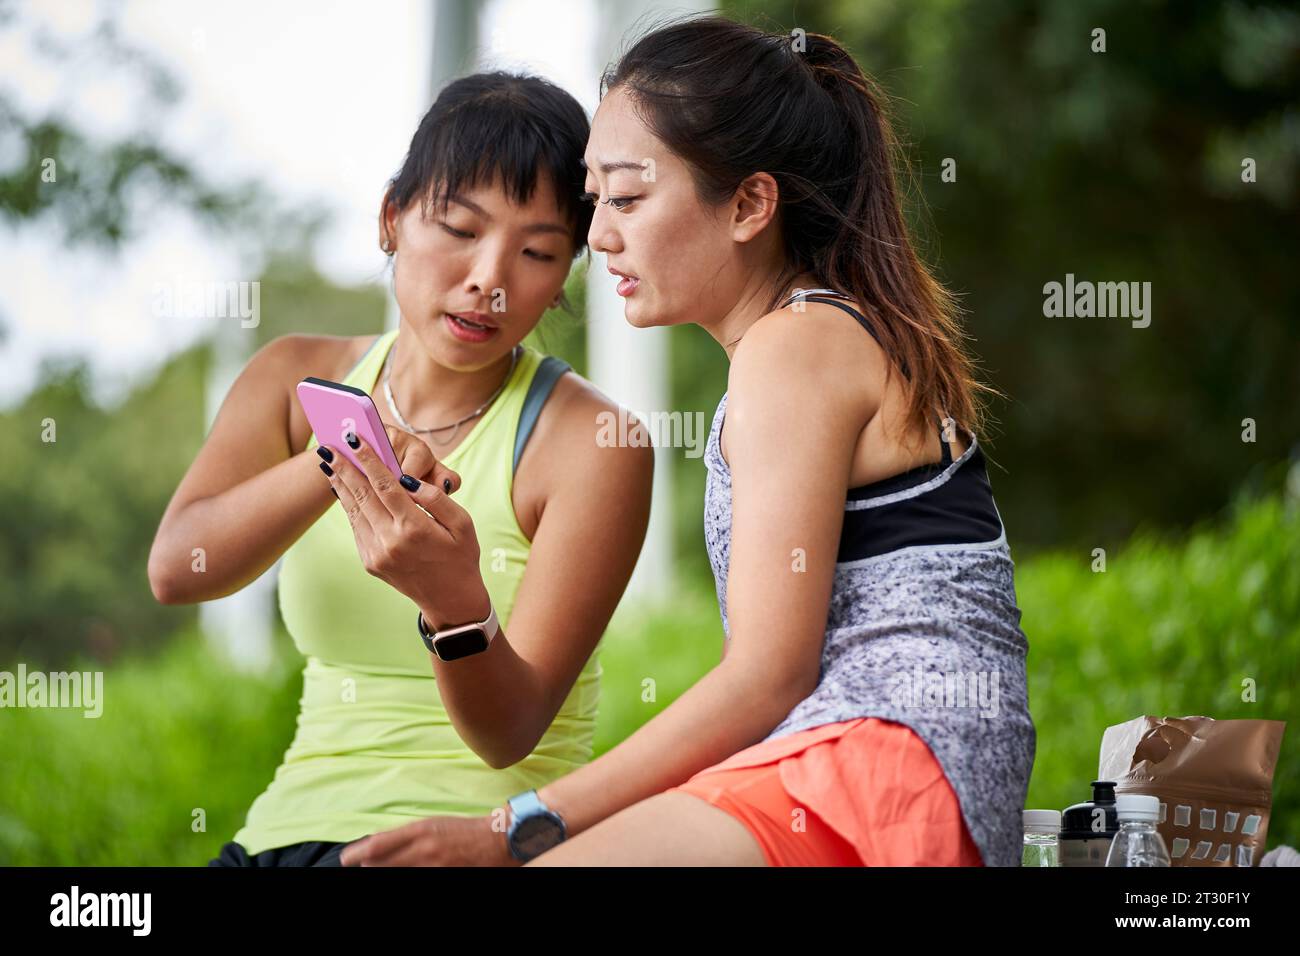 deux jeunes femmes asiatiques amies en sportswear relaxant bavarder partageant des photos de téléphone portable à l'extérieur Banque D'Images